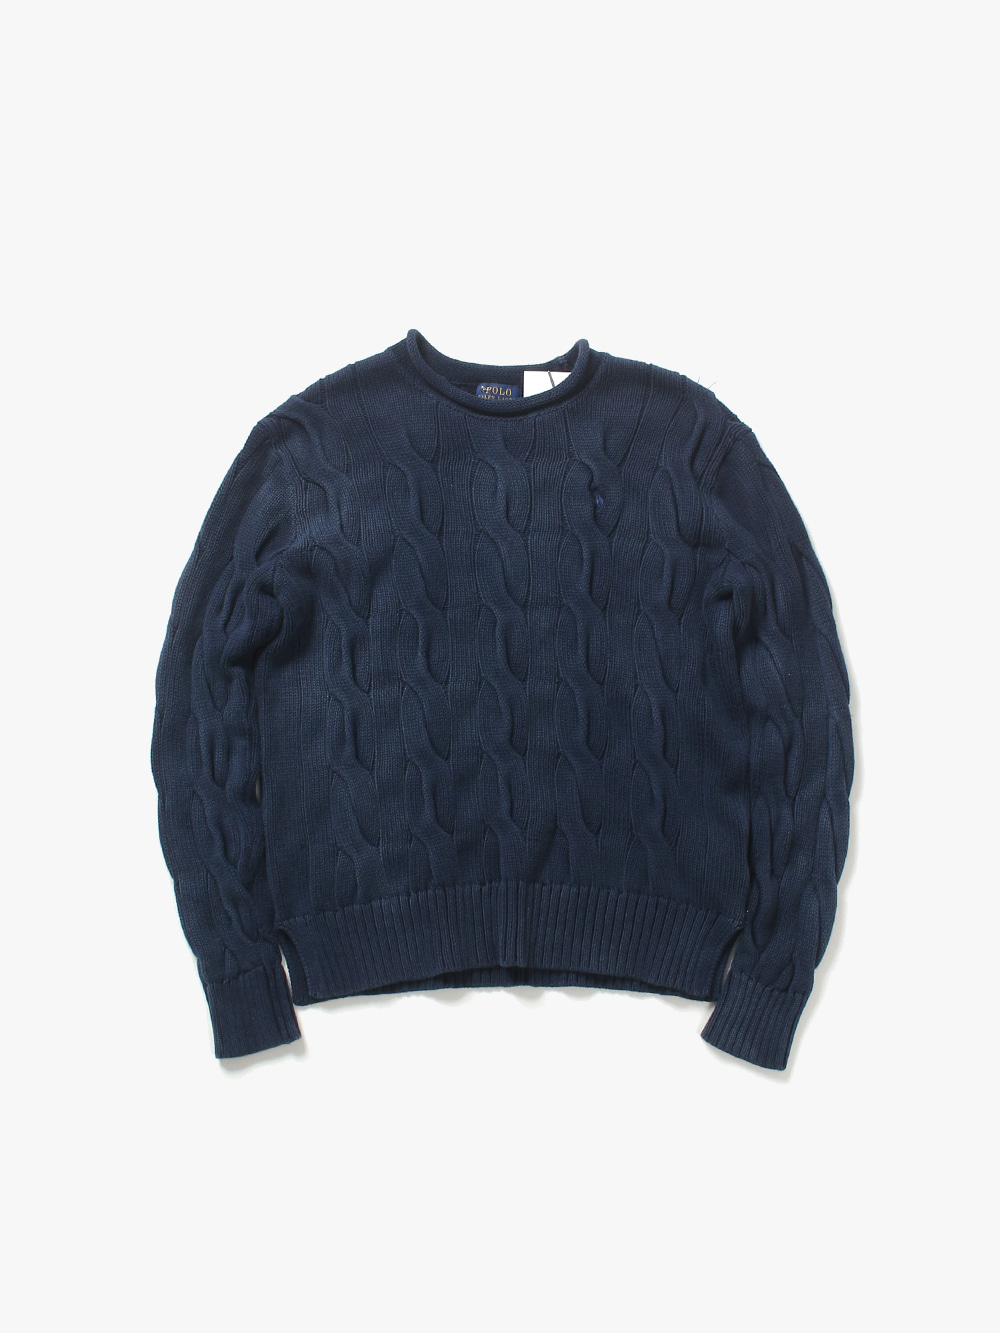 [ women L ] Polo Ralph Lauren Sweater (6445)